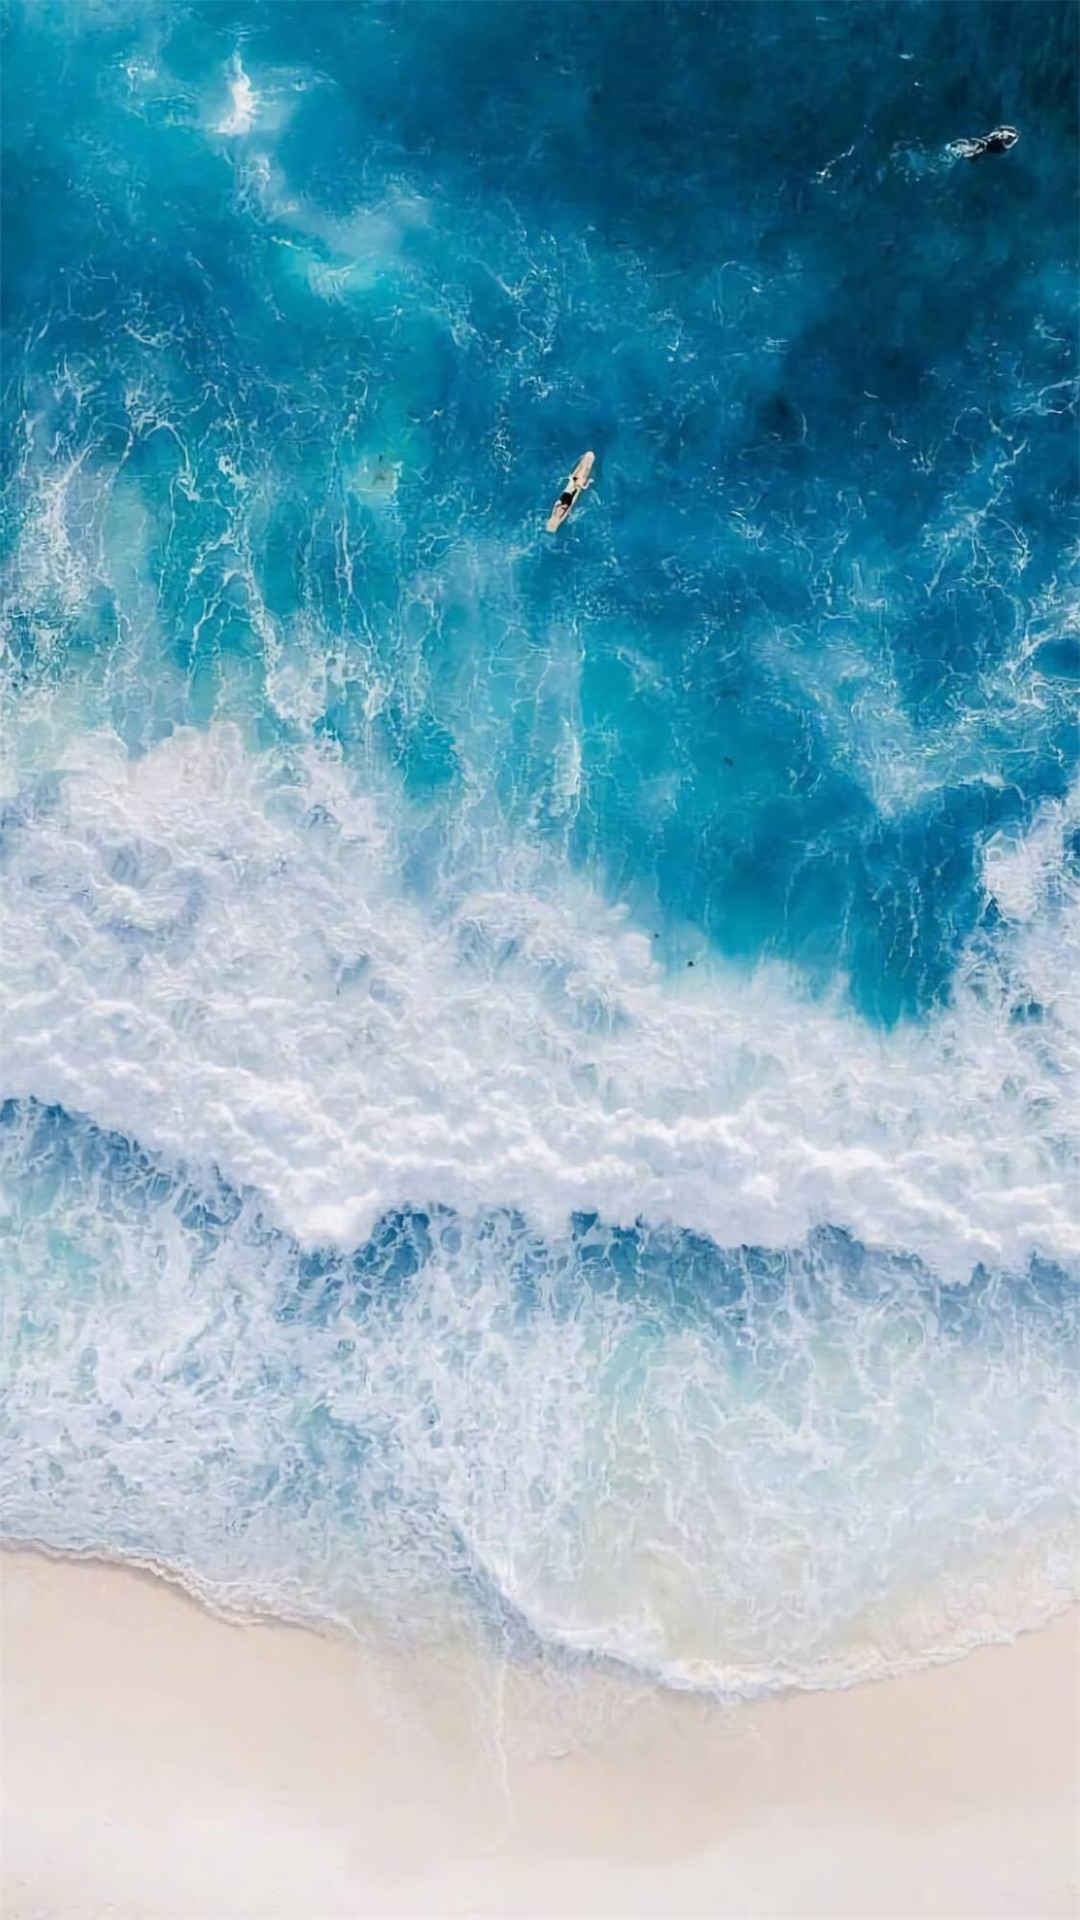 蓝色系海洋风景唯美高清手机壁纸